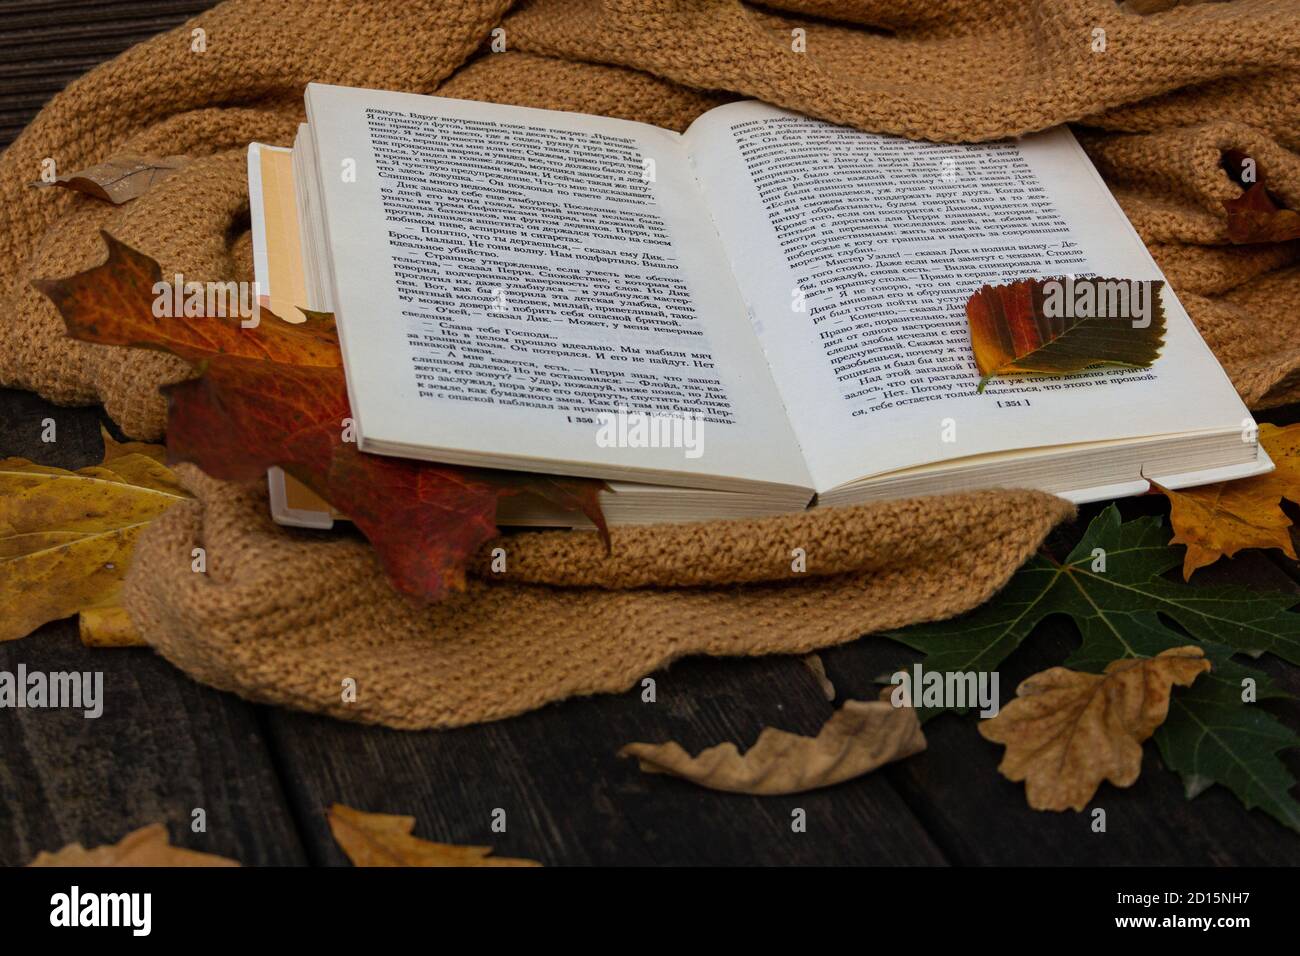 Herbst oder Herbst Komposition mit offenem Buch, gelbem Schal und  gefallenen Blättern auf texturiertem Holzhintergrund. Gemütliches  romantisches Konzept Stockfotografie - Alamy